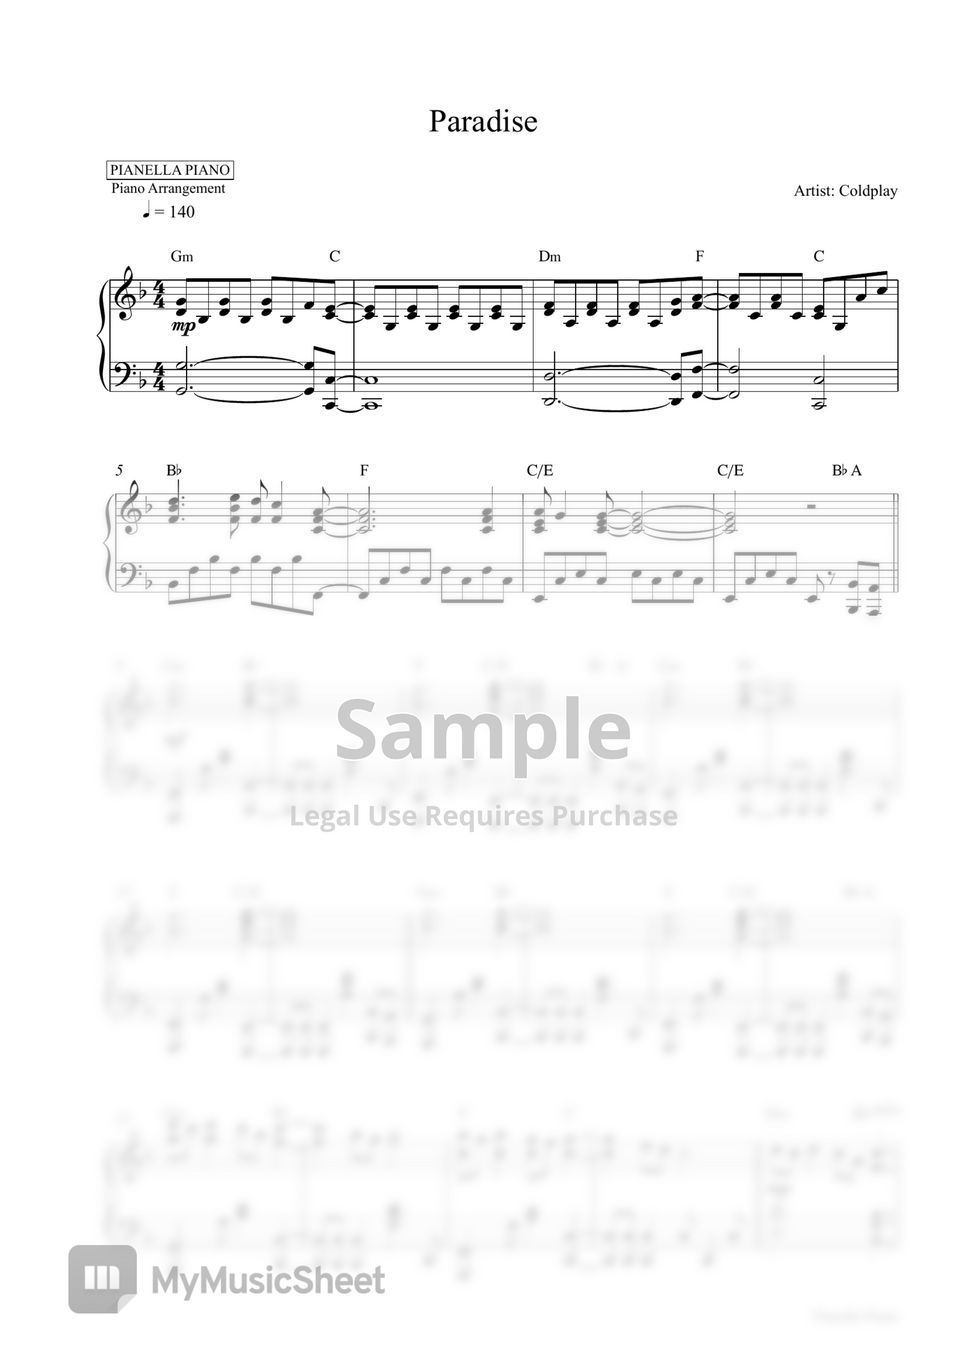 Coldplay - Paradise (Piano Sheet) by Pianella Piano